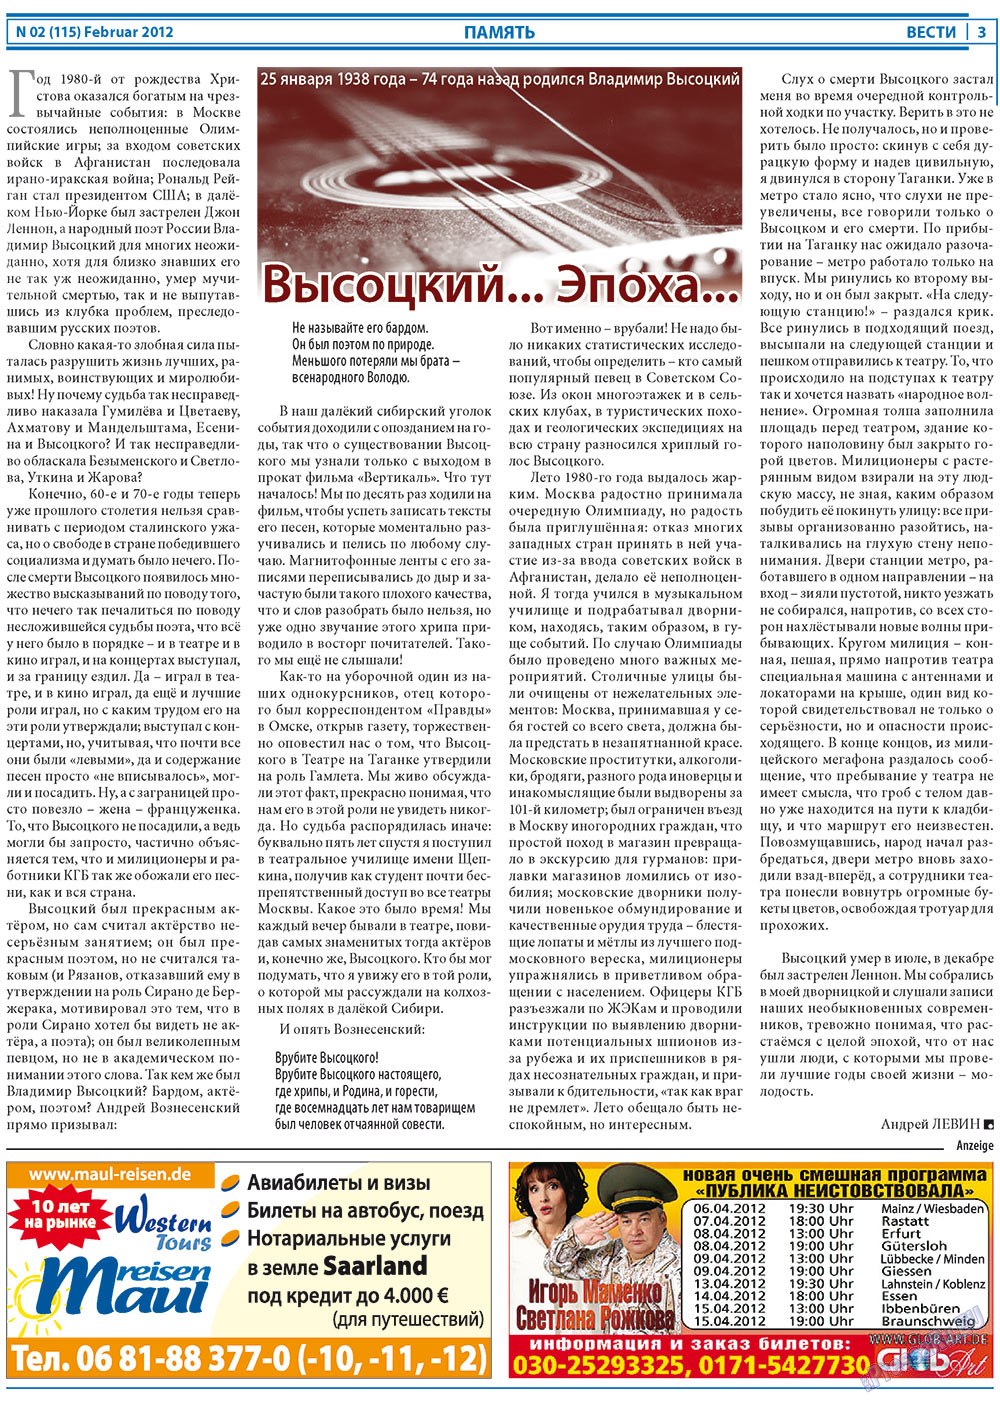 Вести, газета. 2012 №2 стр.3